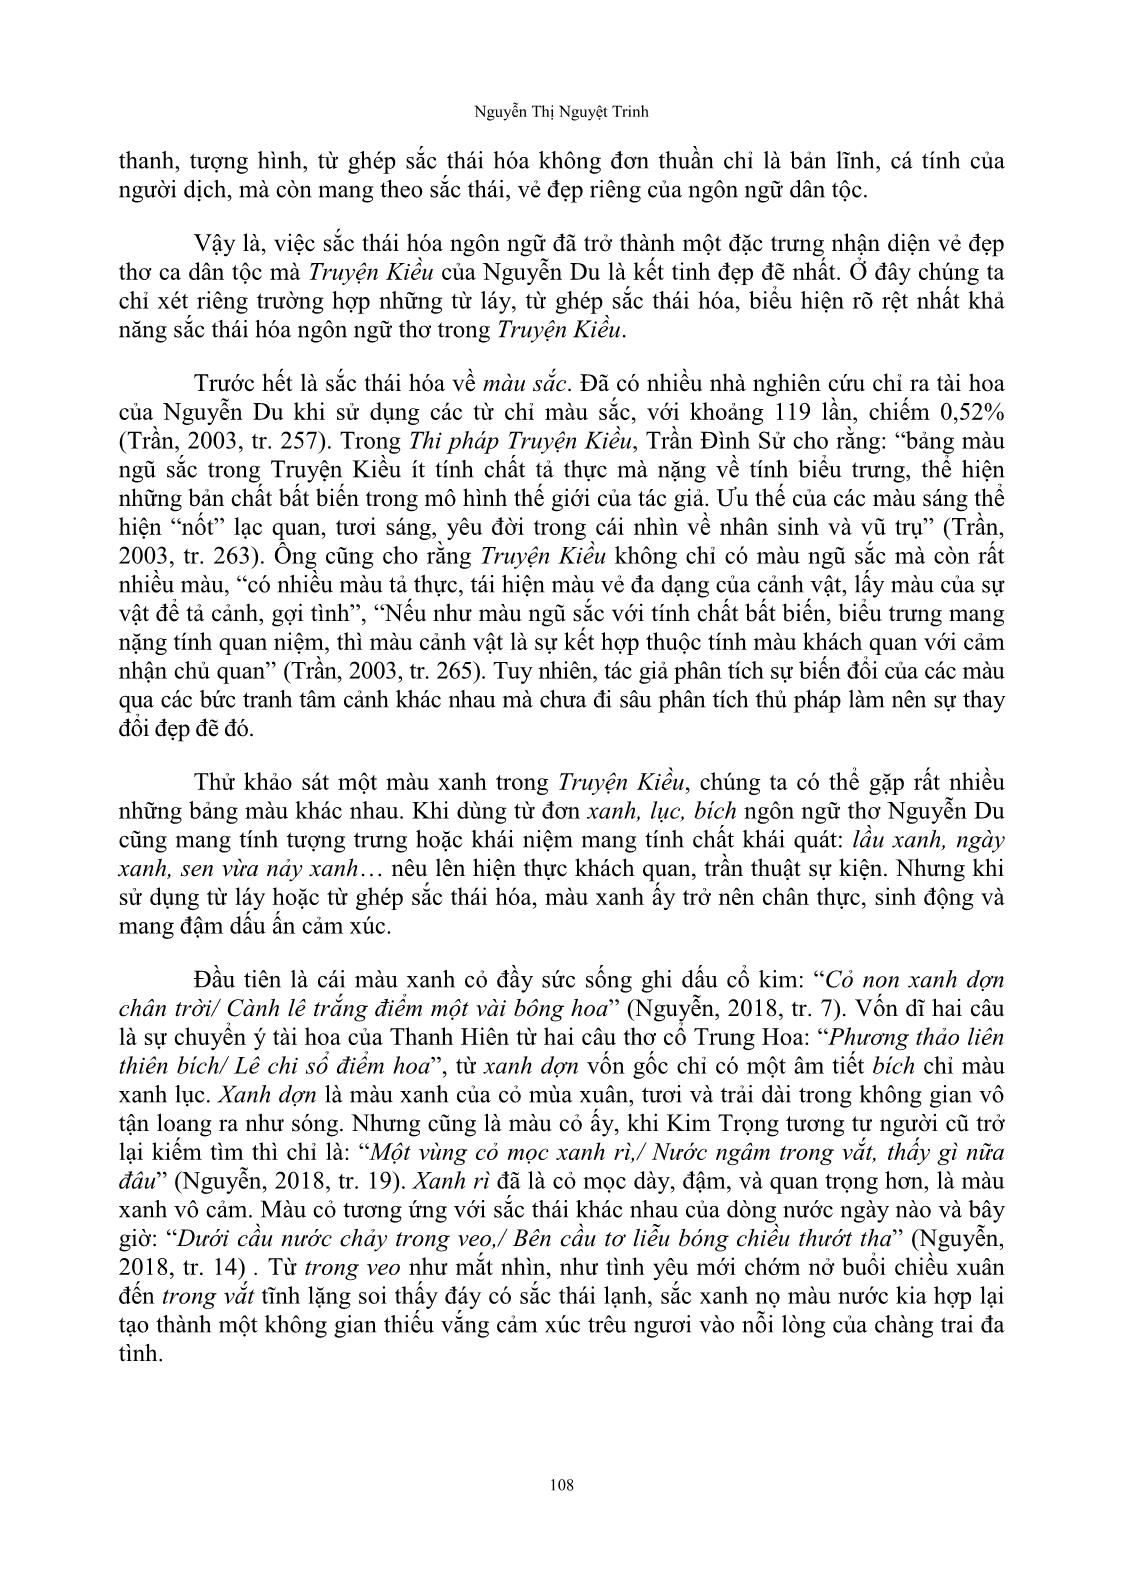 Sắc thái hóa ngôn ngữ thơ trong truyện Kiều của Nguyễn Du trang 5